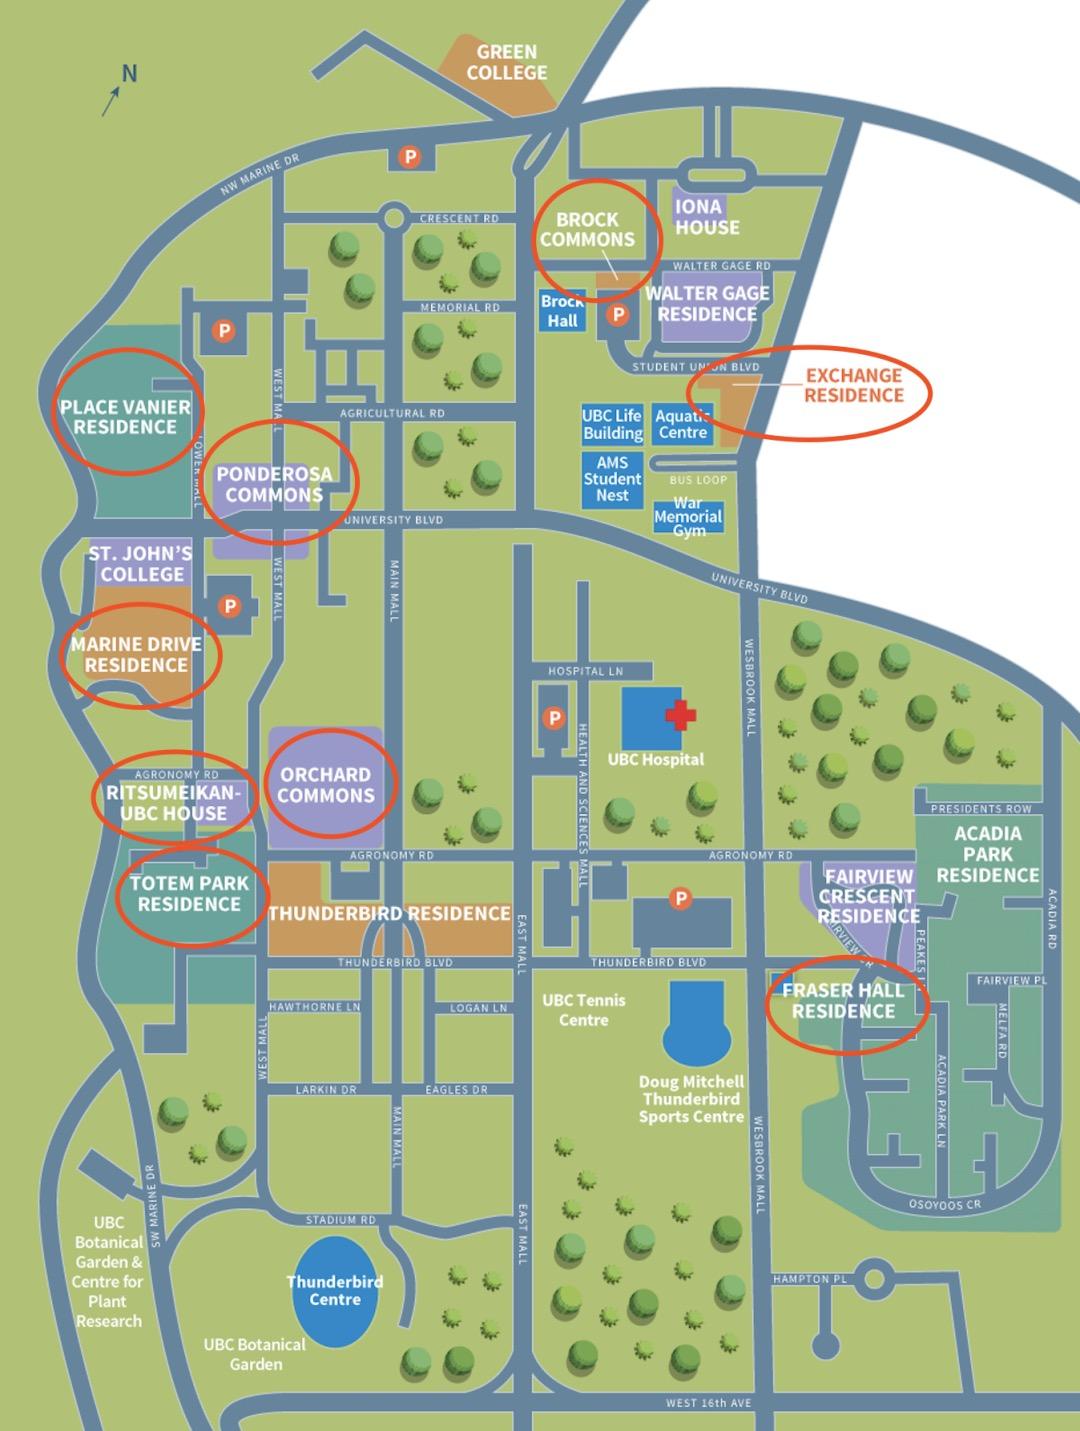 温哥华主校区主要有18个宿舍楼,并且可以通过网上查询每个地理位置